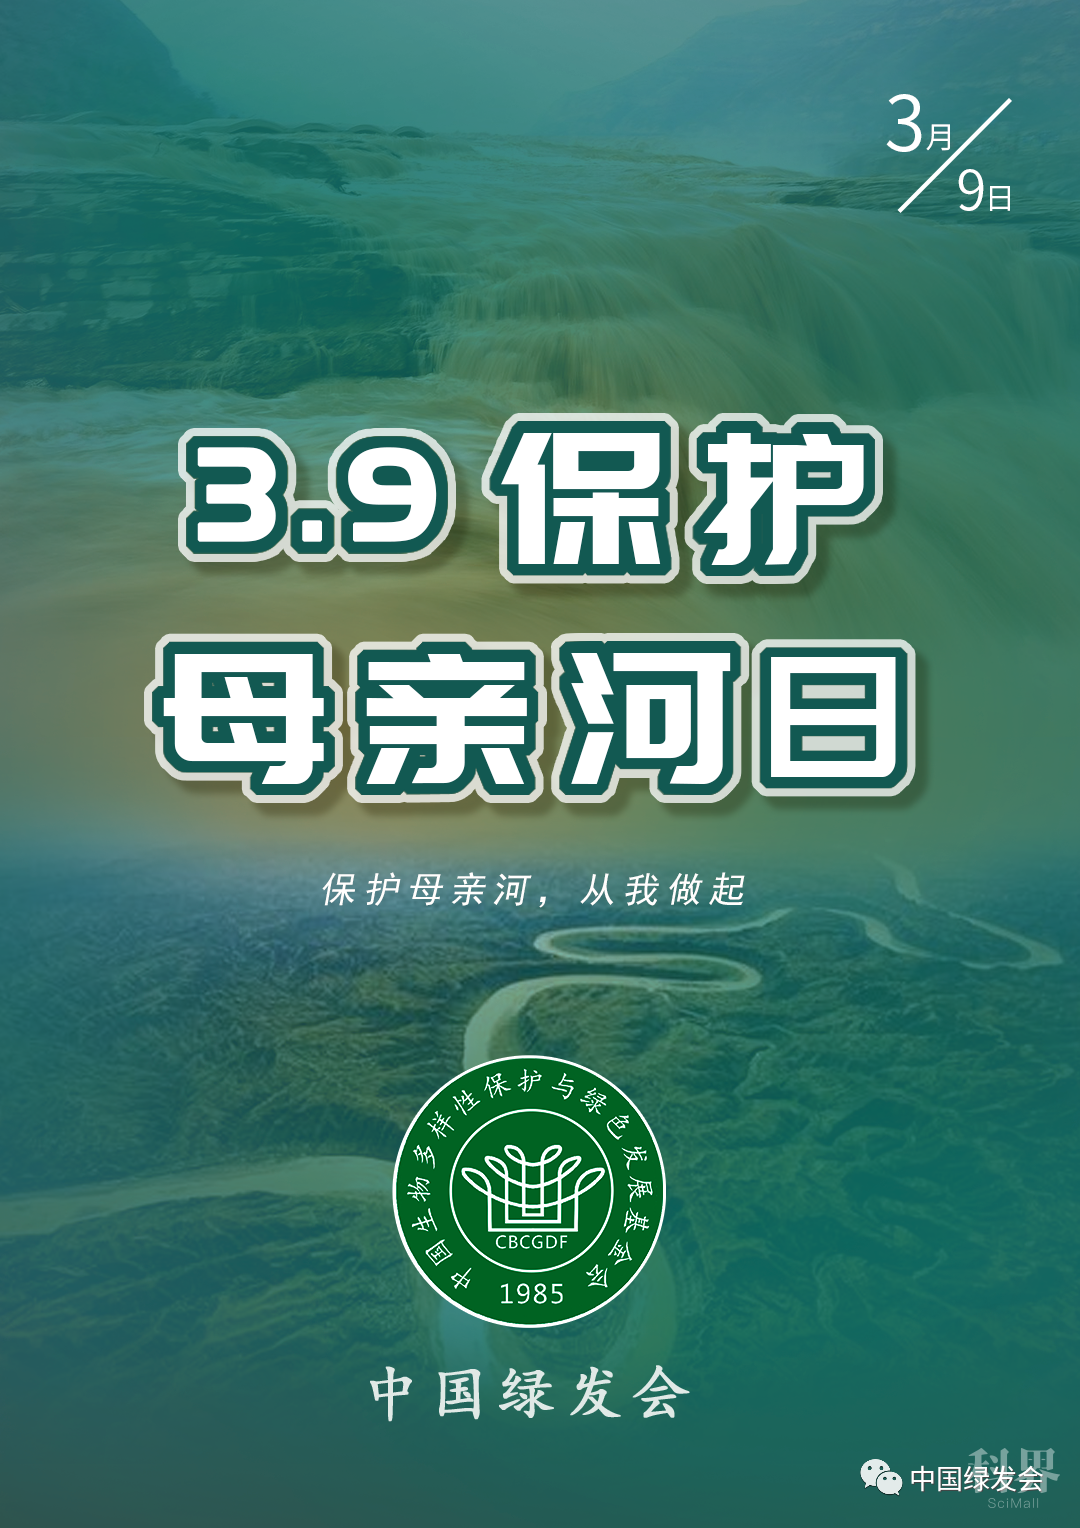 携手保护母亲河 共绘绿水青山图|3.9保护母亲河日